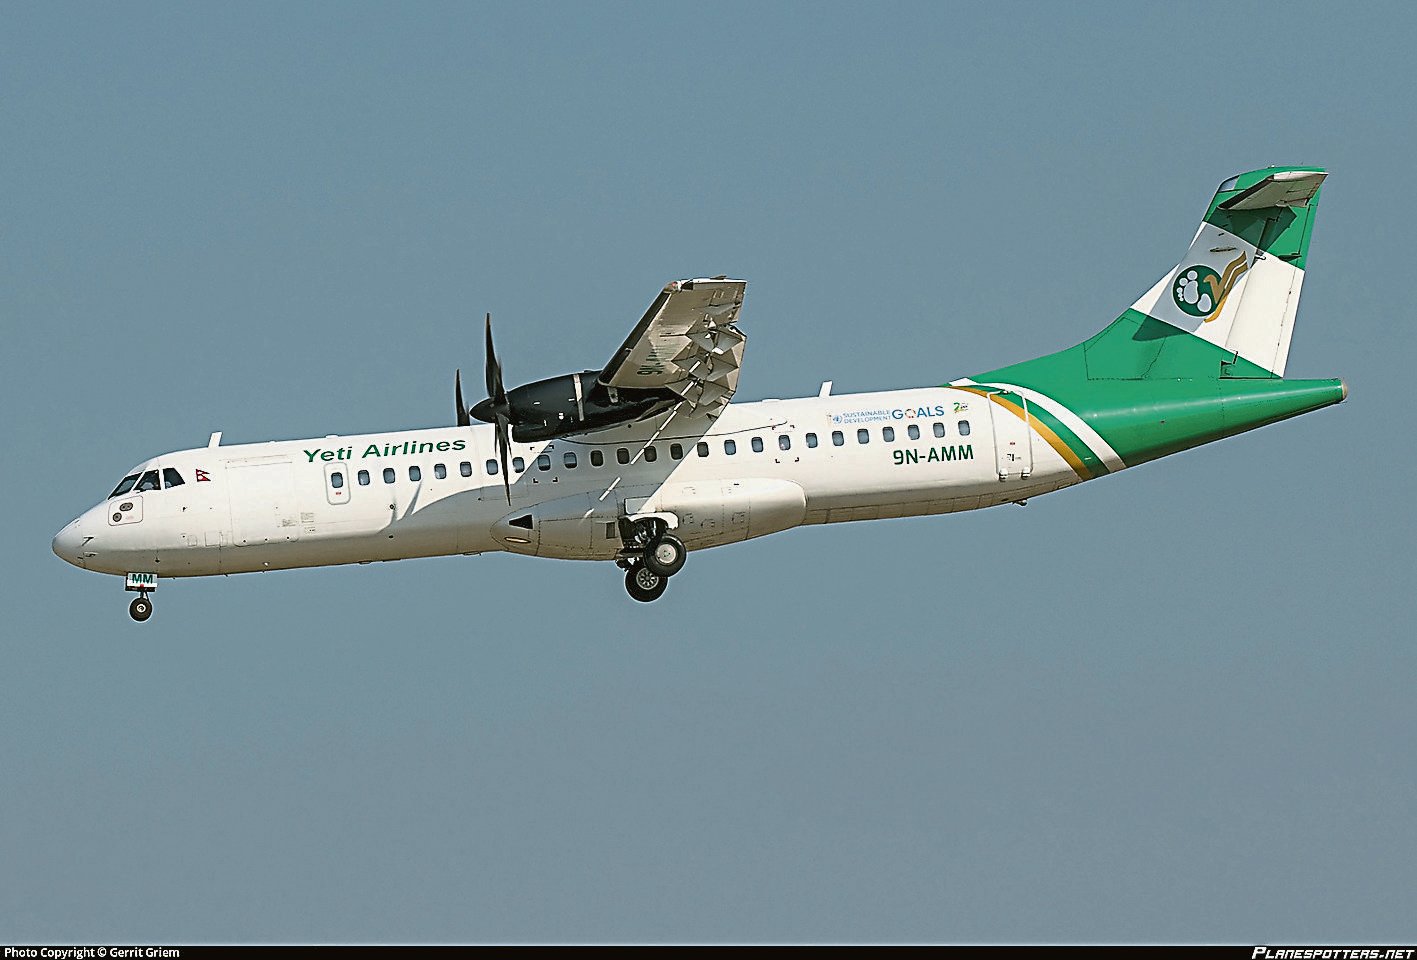 尼泊尔雪人航空坠机　ATR 72机型多次出事　包括复兴航空2015空难